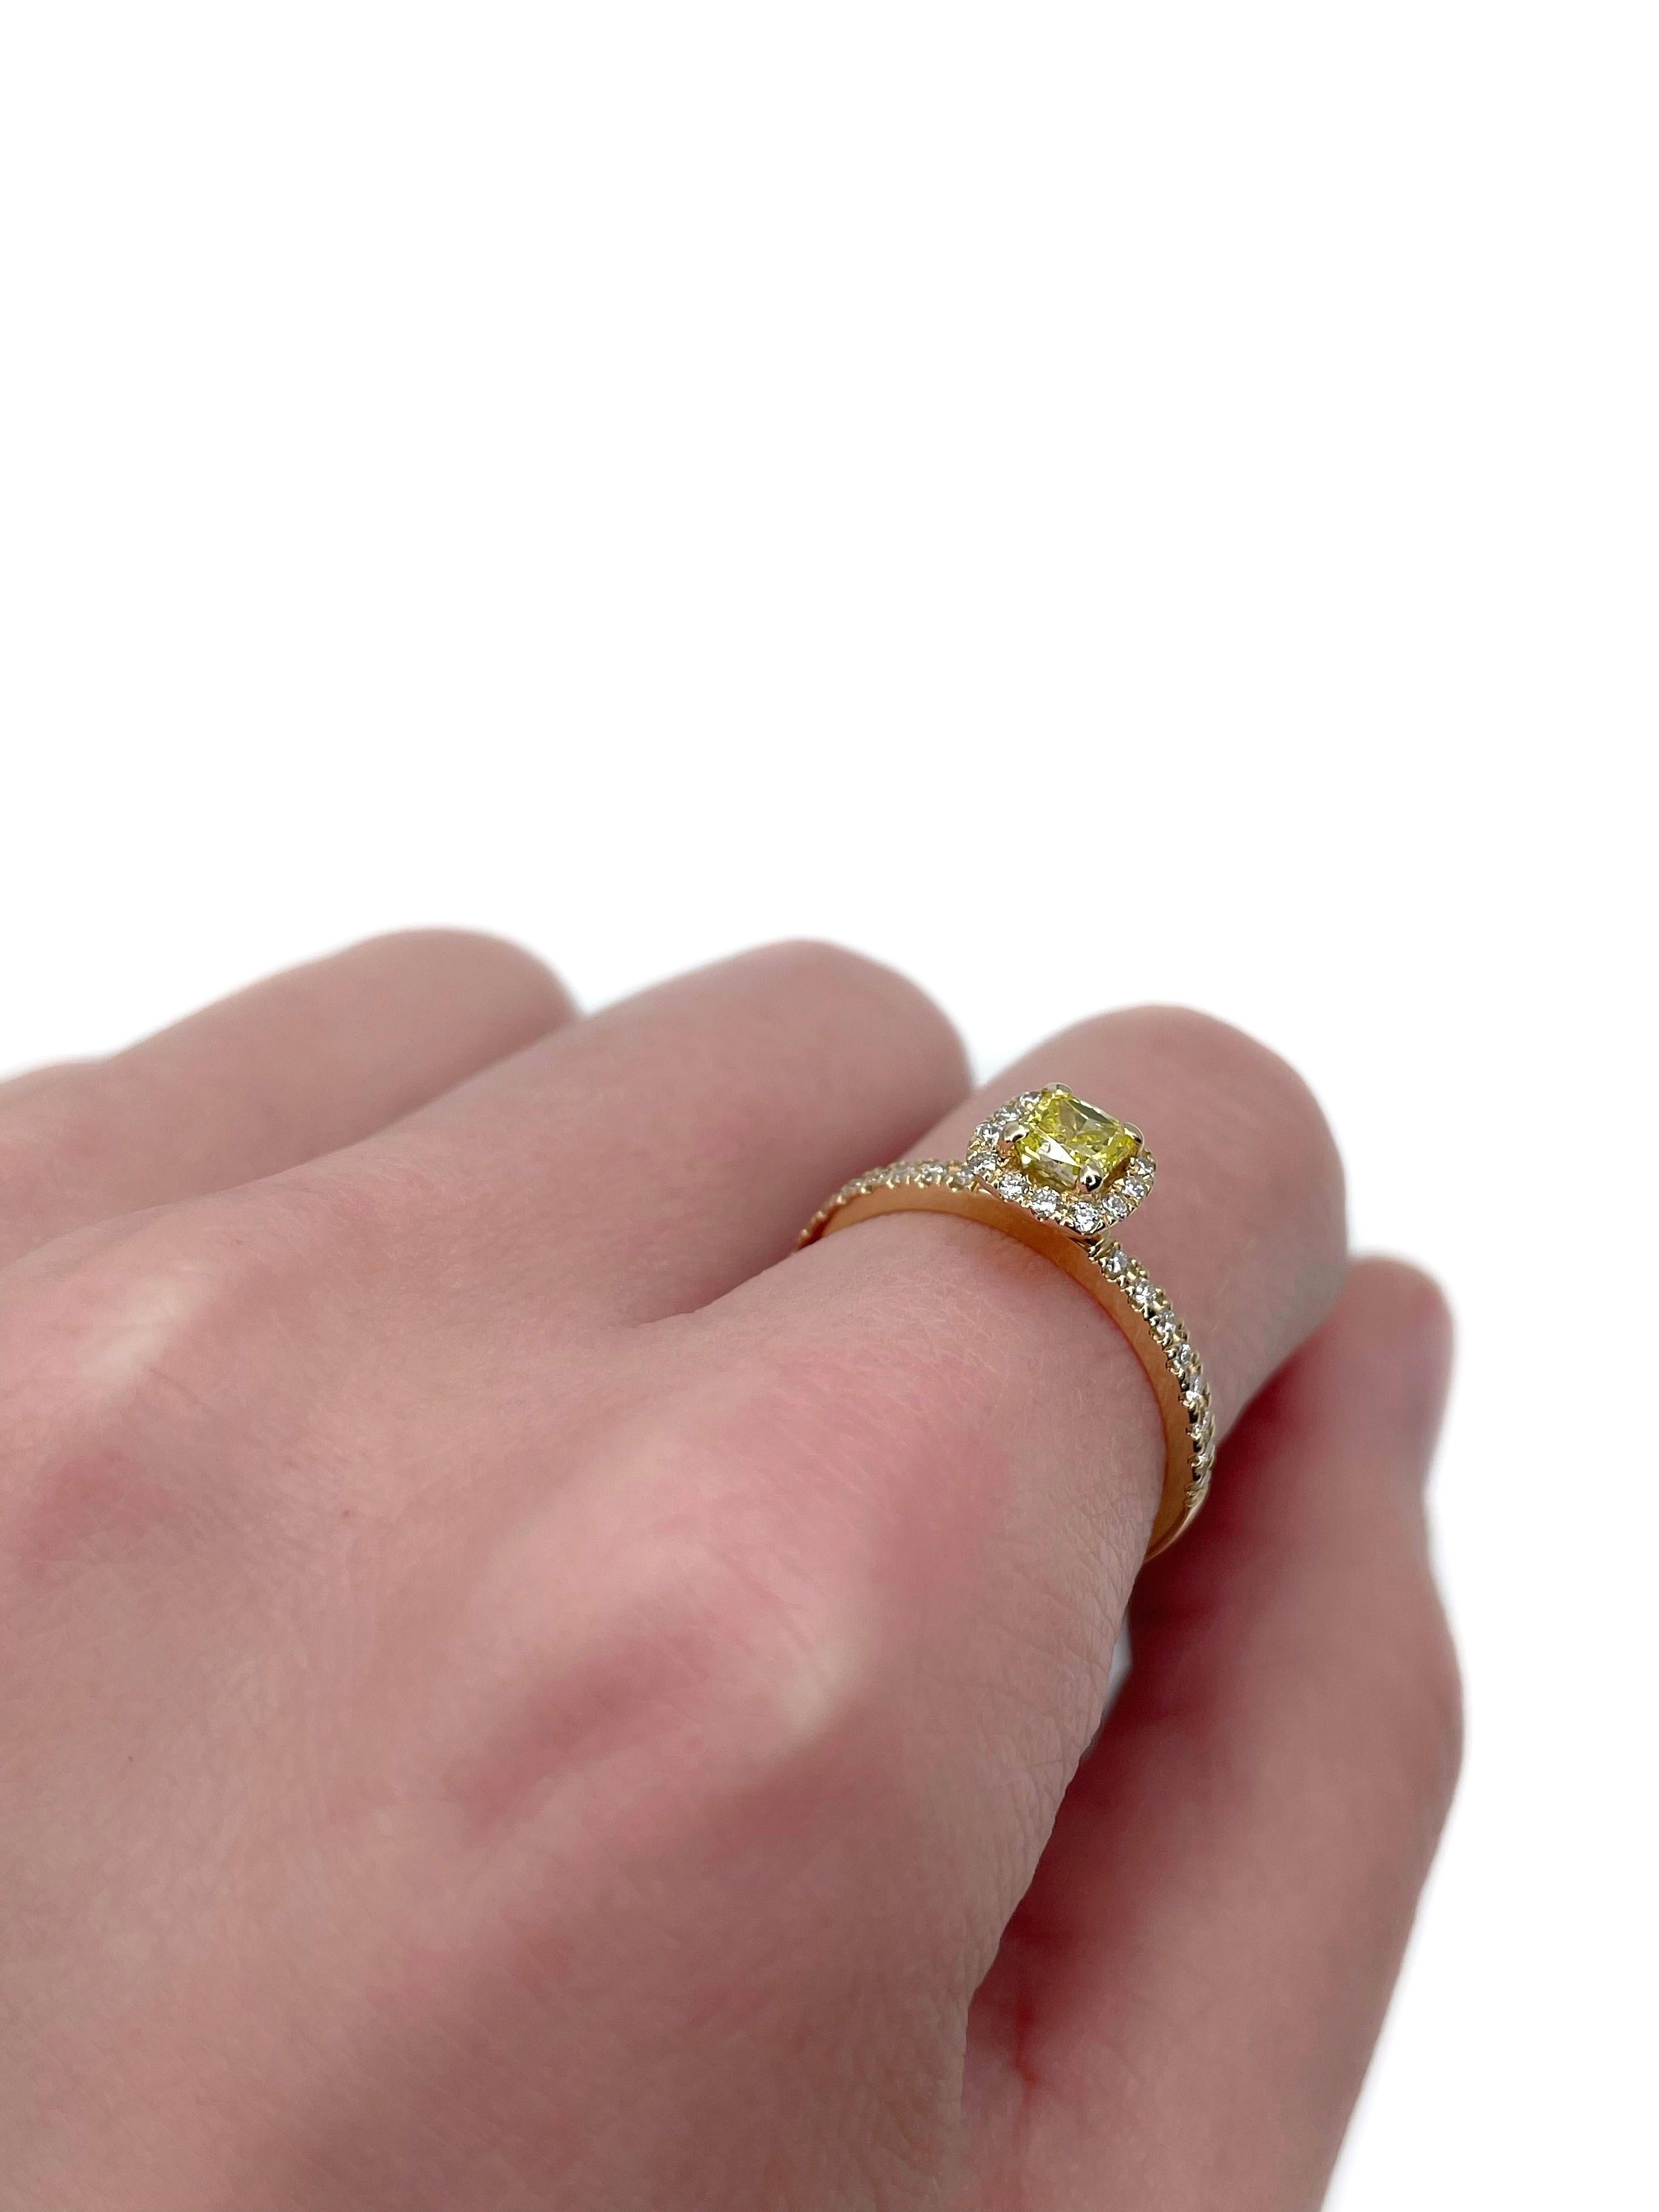 Modern Certified 18 Karat Gold 0.40 Carat Fancy Yellow Diamond Engagement Ring